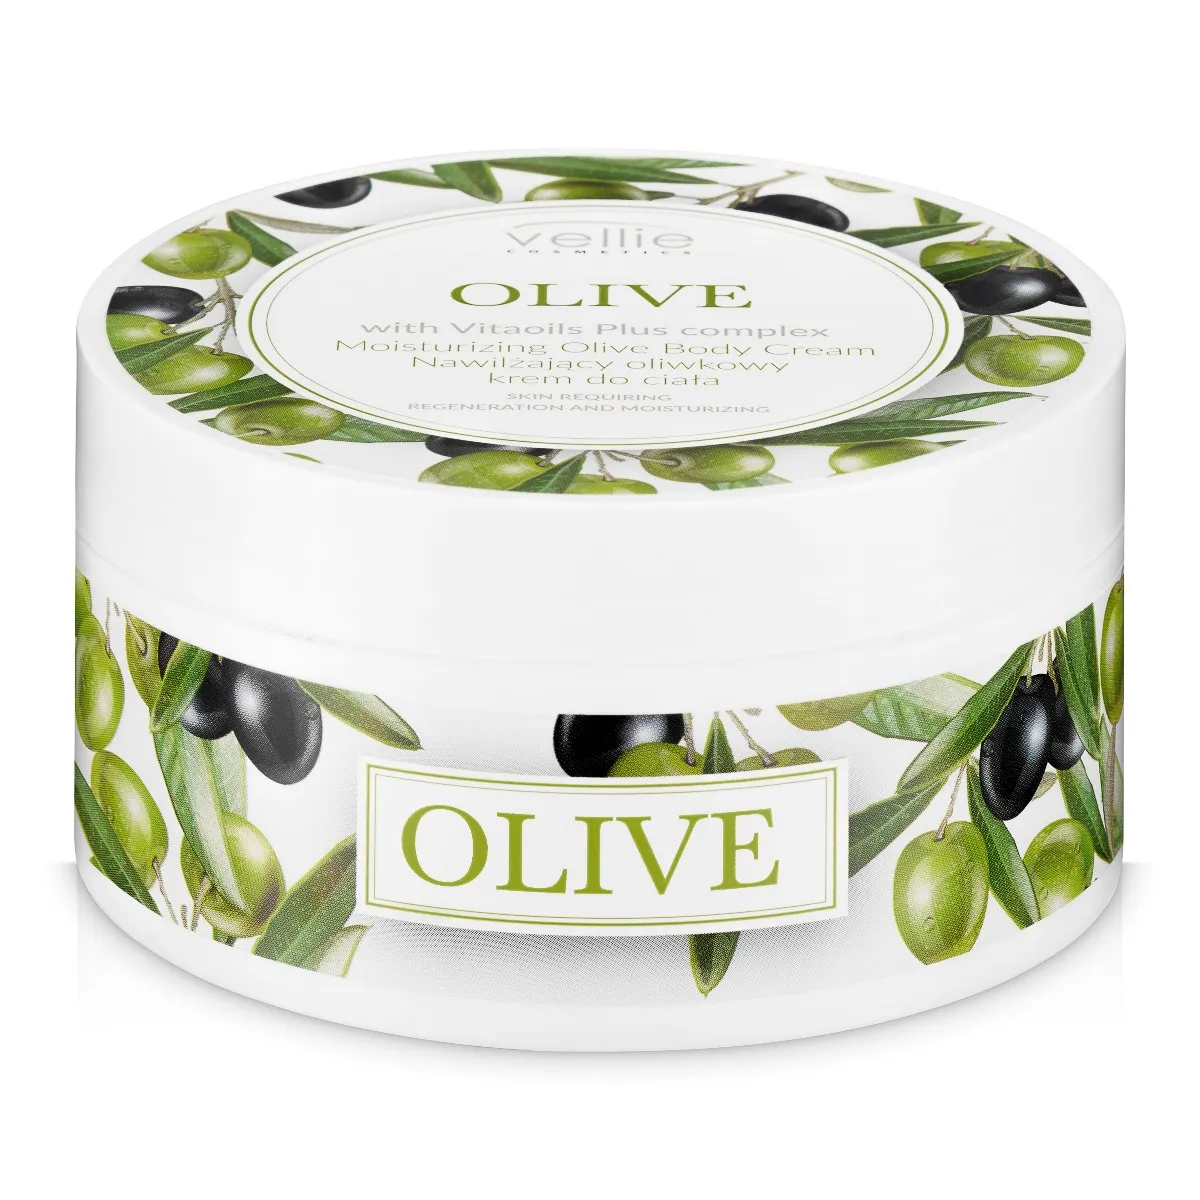 Vellie Olive nawilżający oliwkowy krem do ciała, 200 ml